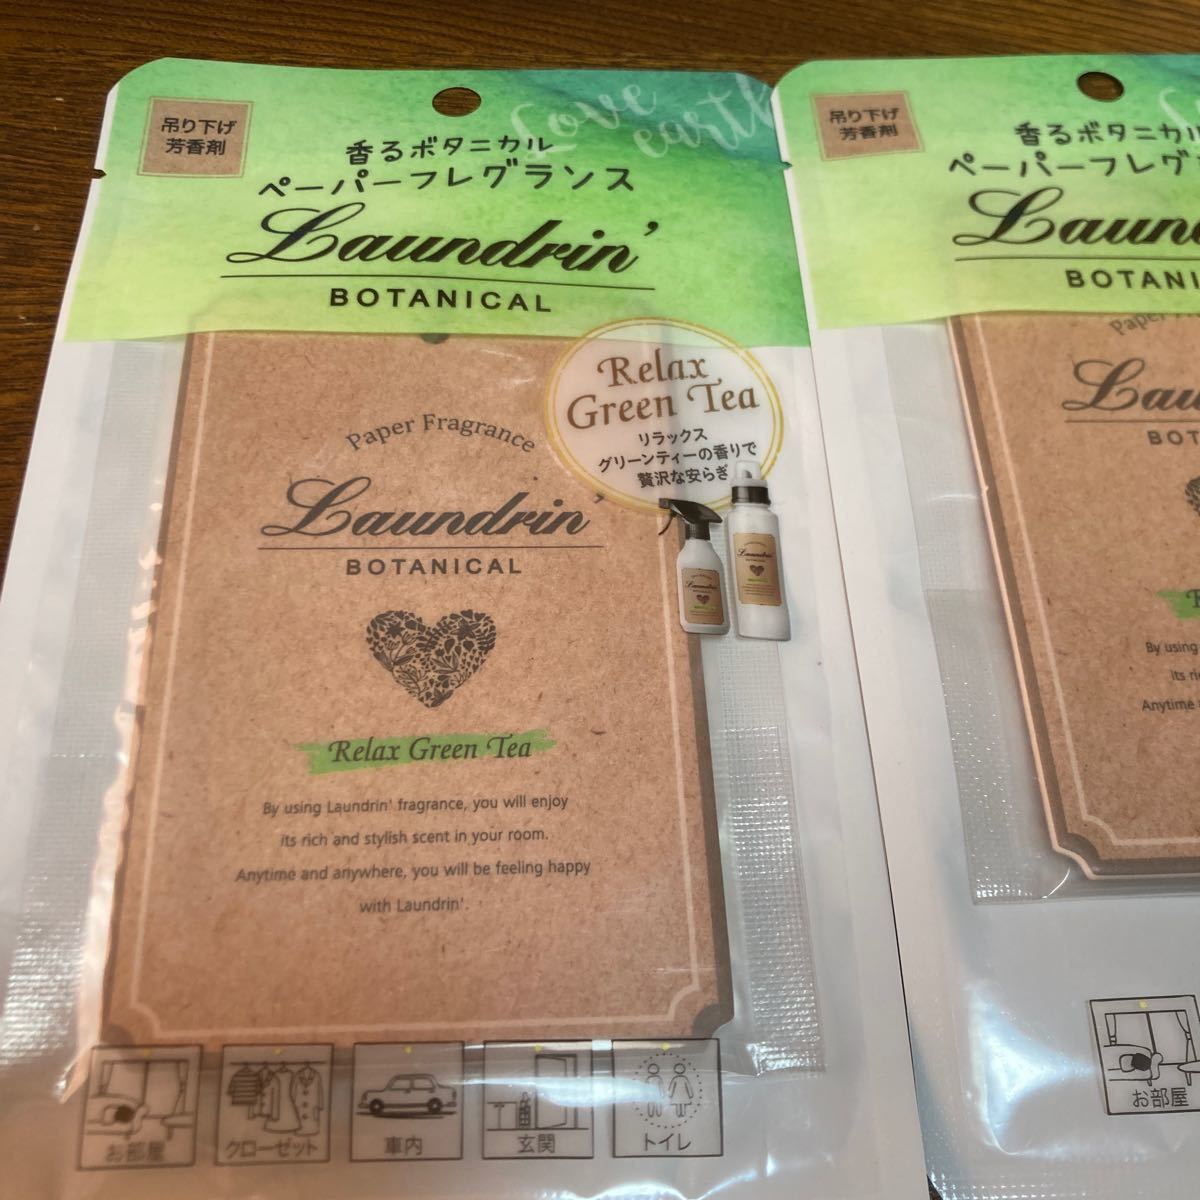  Land Lynn botanikaru бумага аромат relax зеленый чай Laundrin подвешивание ниже ароматические средства 2000 иен купон использование бесплатная доставка быстрое решение 